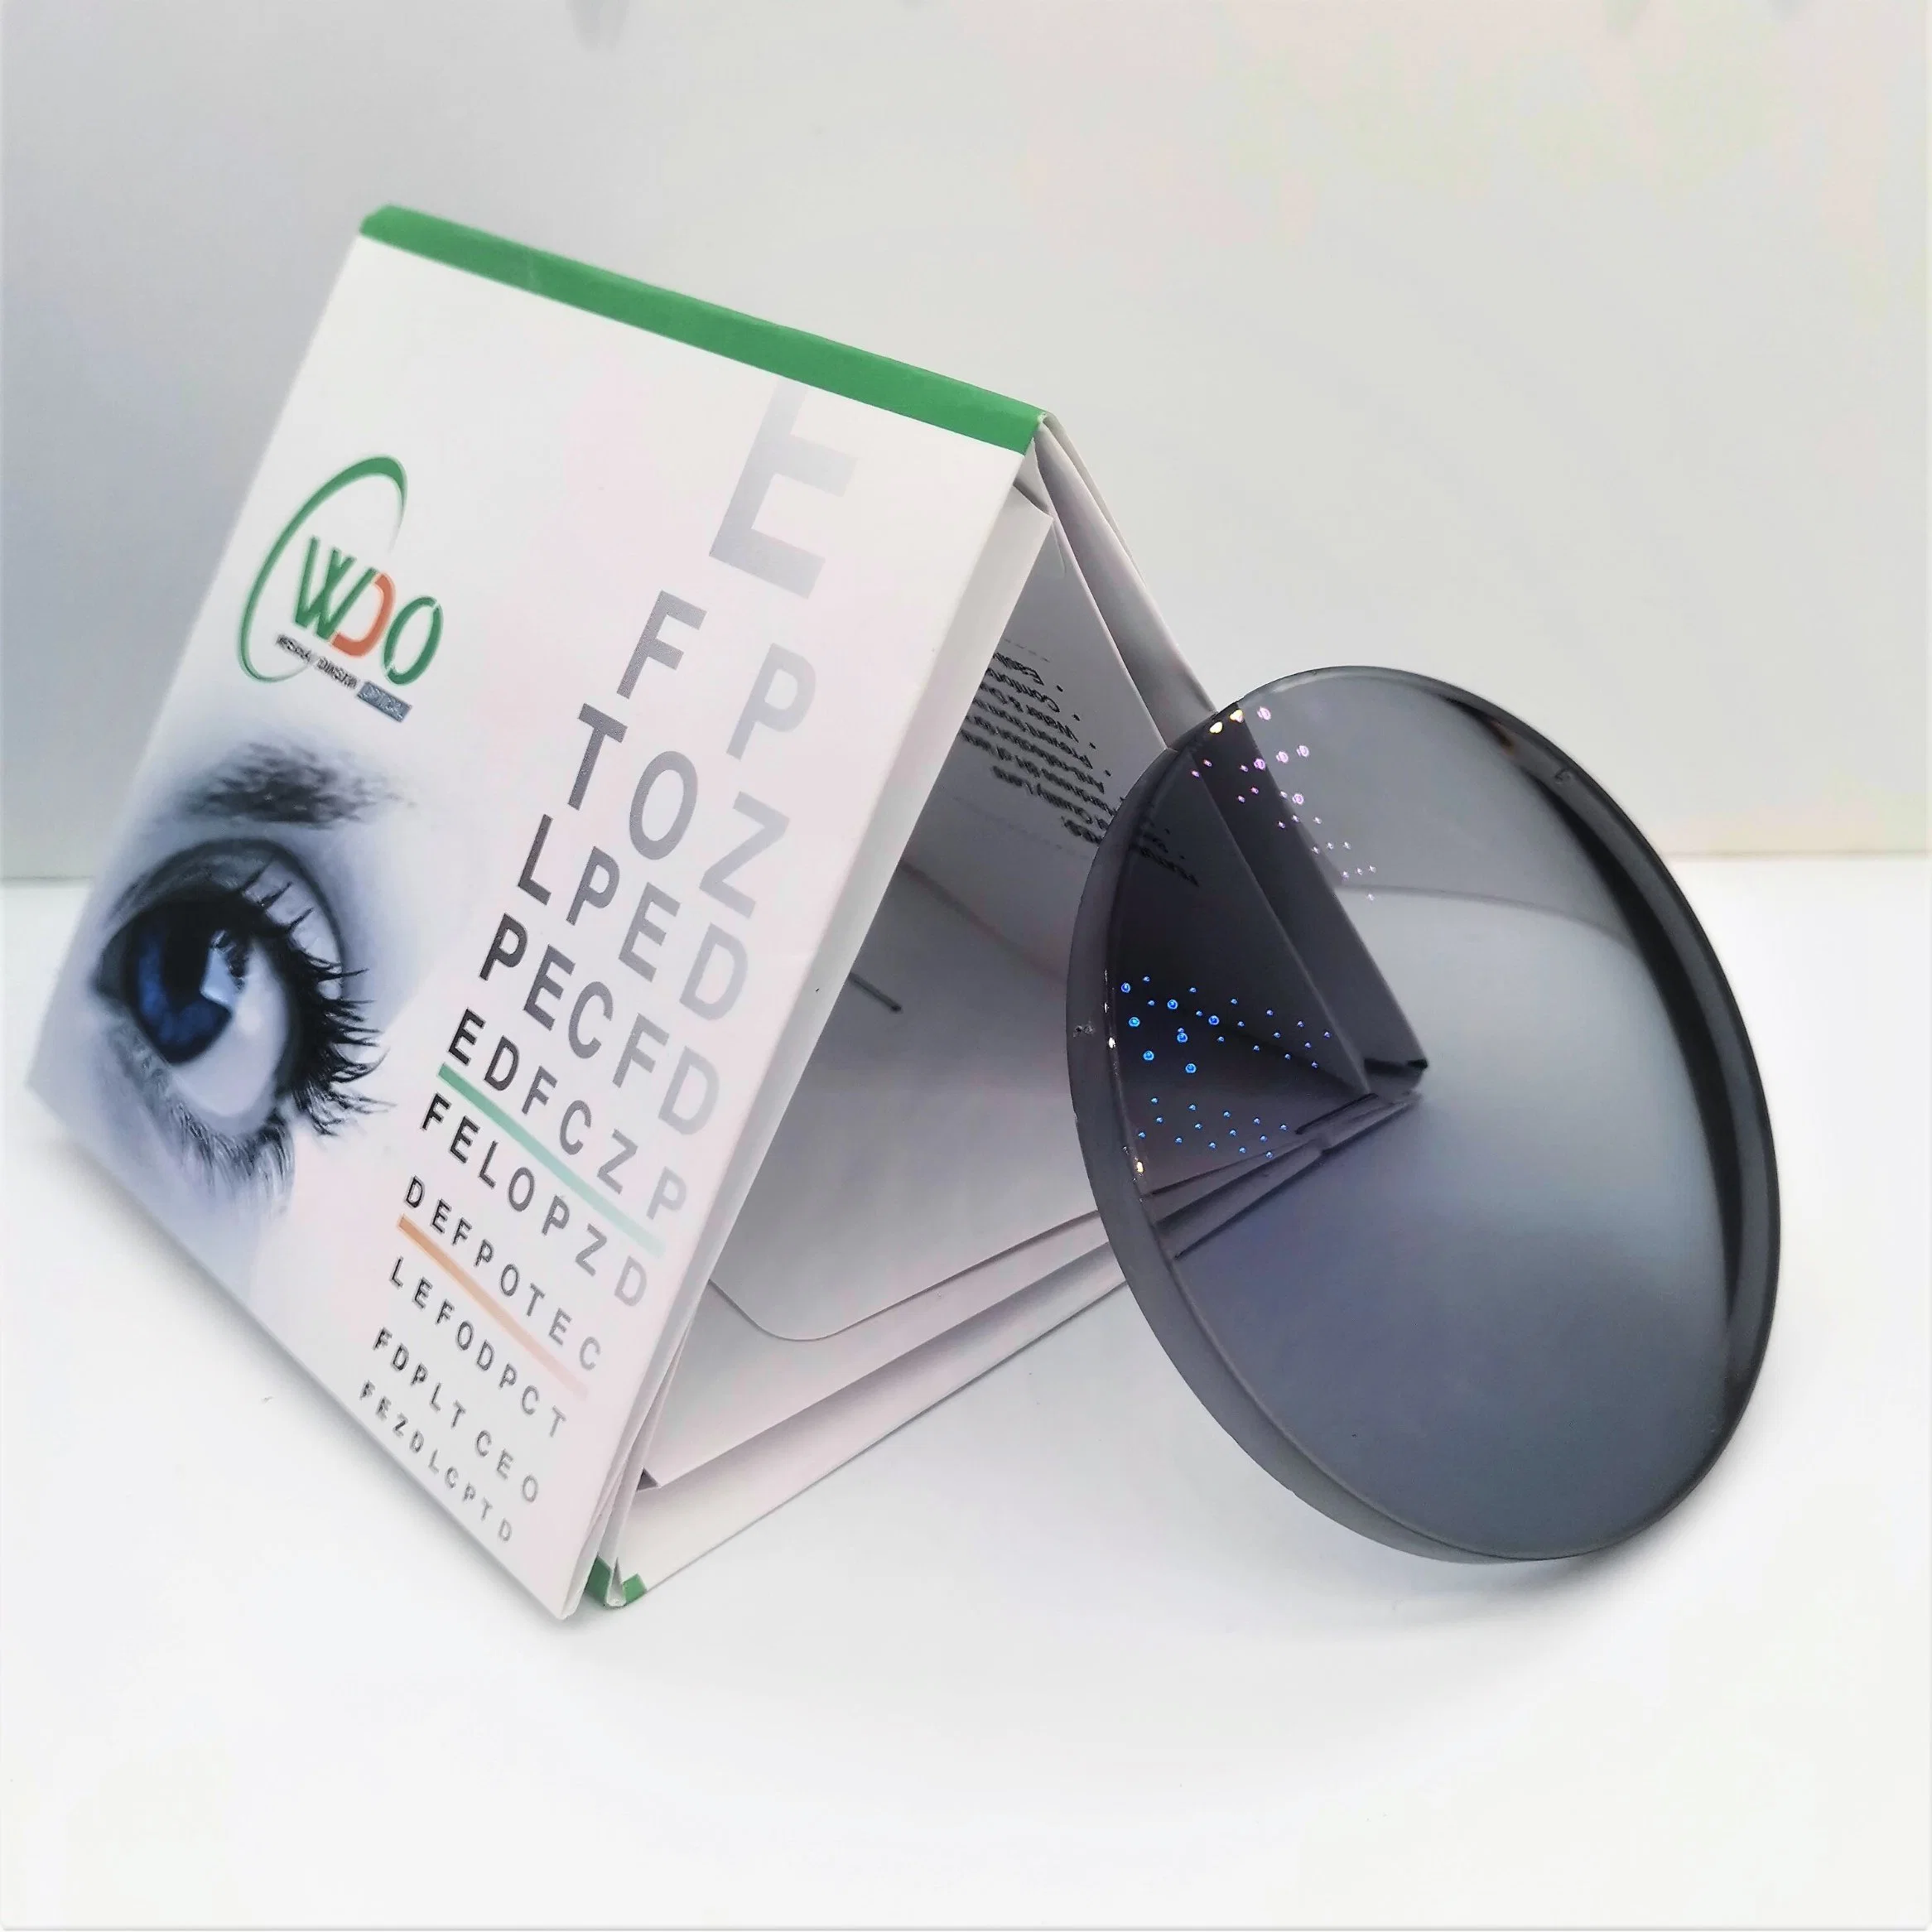 1,67 FSV ASP lente óptica óptica fotocrómica HMC ocular lente